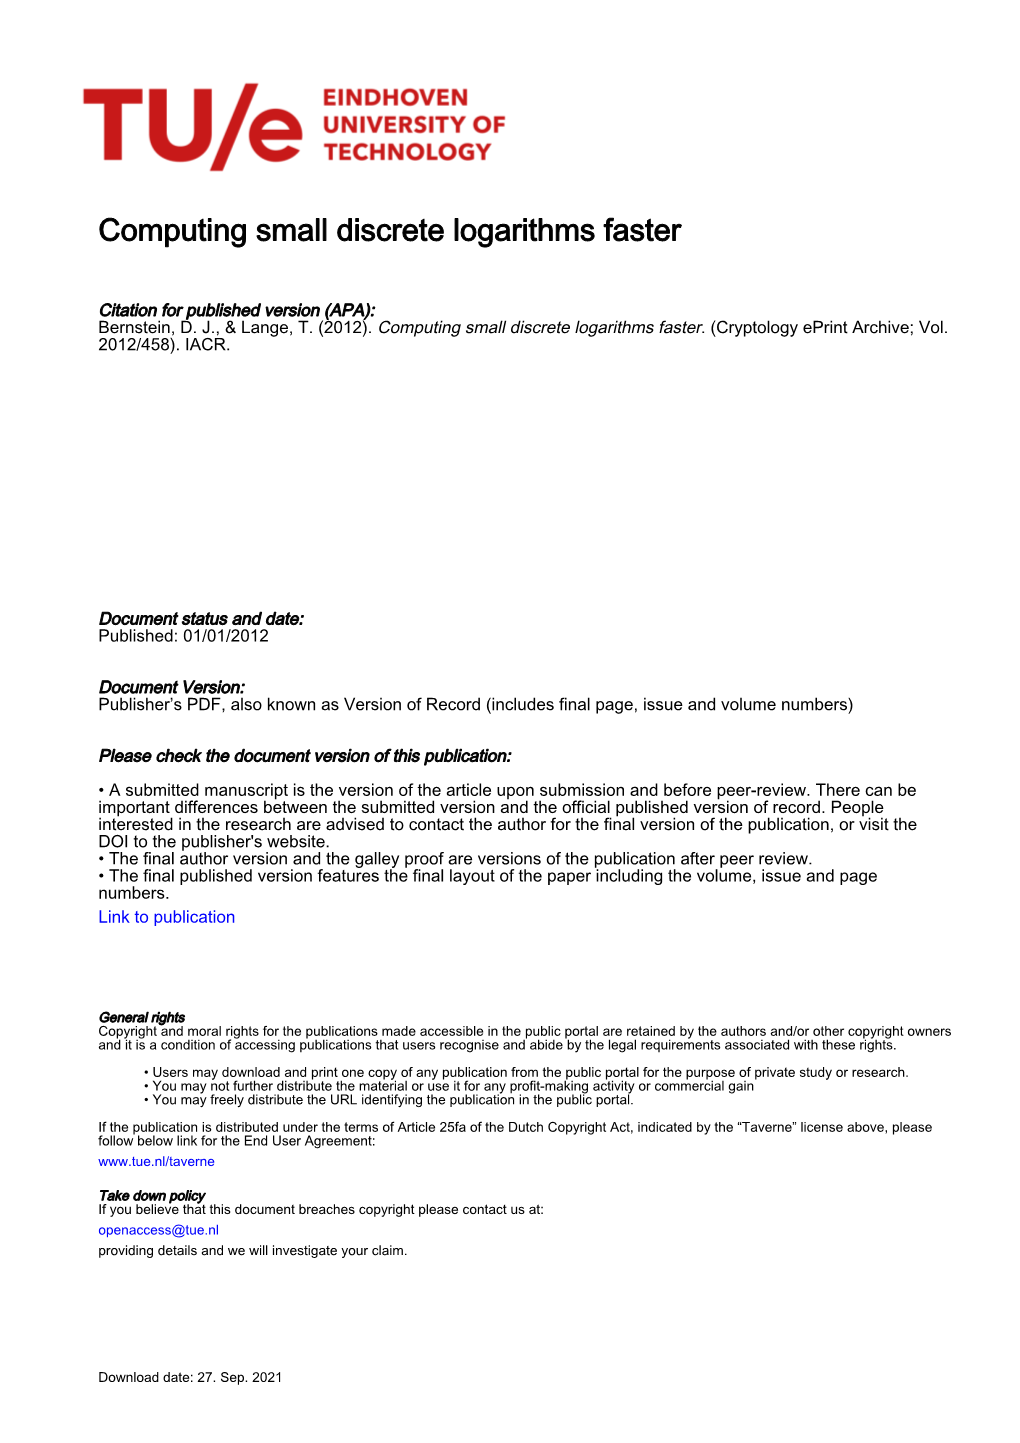 Computing Small Discrete Logarithms Faster